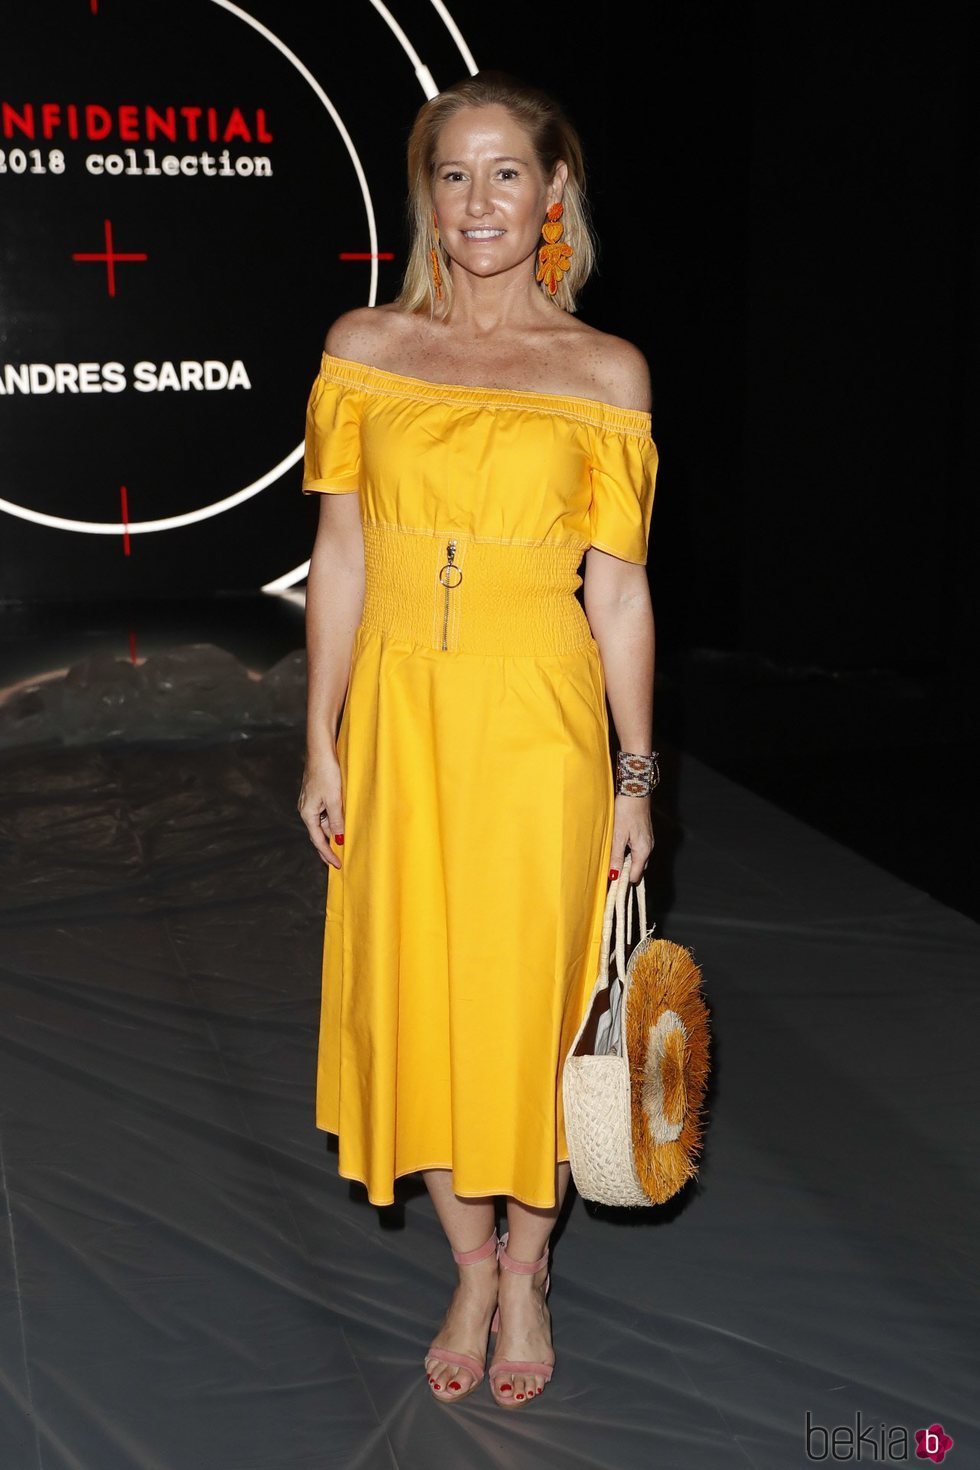 Fiona Ferrer en el front row de Andrés Sardá en Madrid Fashion Week primavera/verano 2019